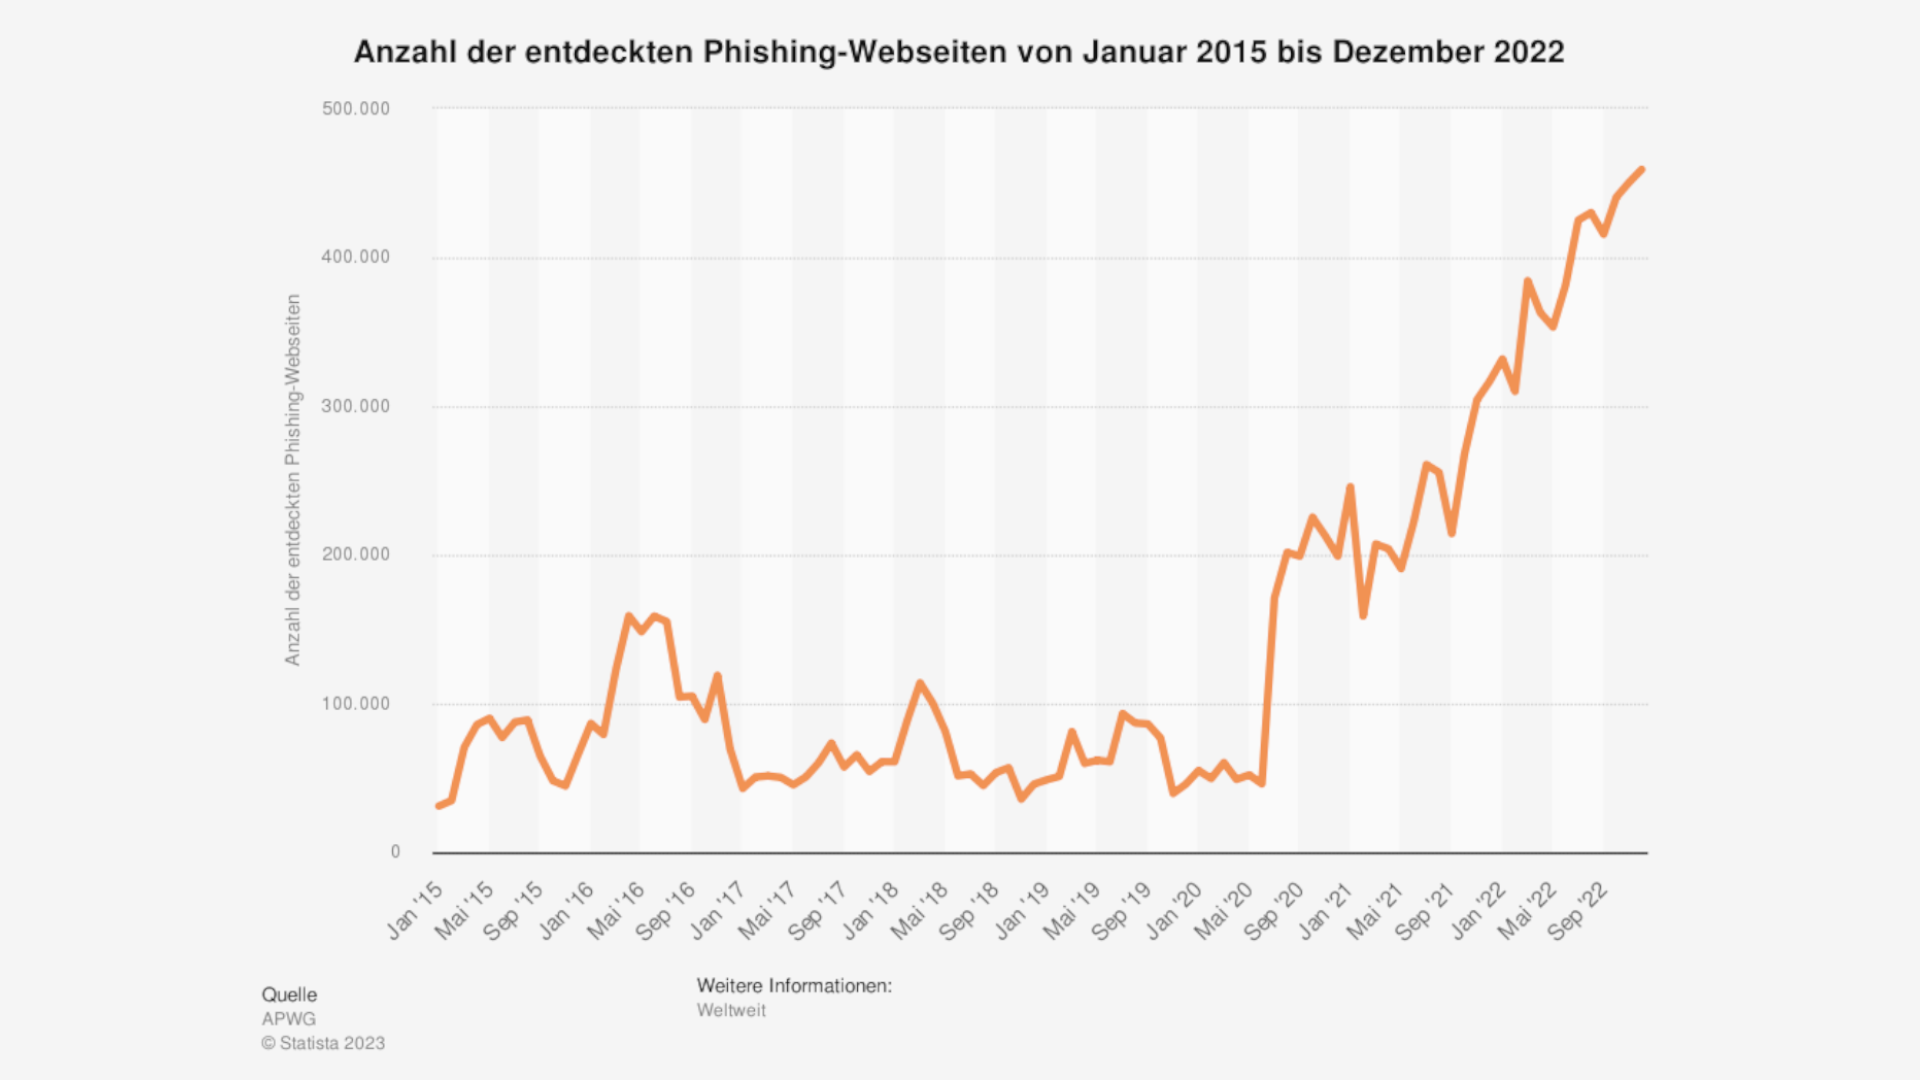 Diese Statistik bildet die Anzahl der entdeckten Phishing-Webseiten von Januar 2015 bis Dezember 2022 ab. Laut der Quelle wurden im Dezember 2022 rund 459.139 Phishing-Webseiten weltweit entdeckt.